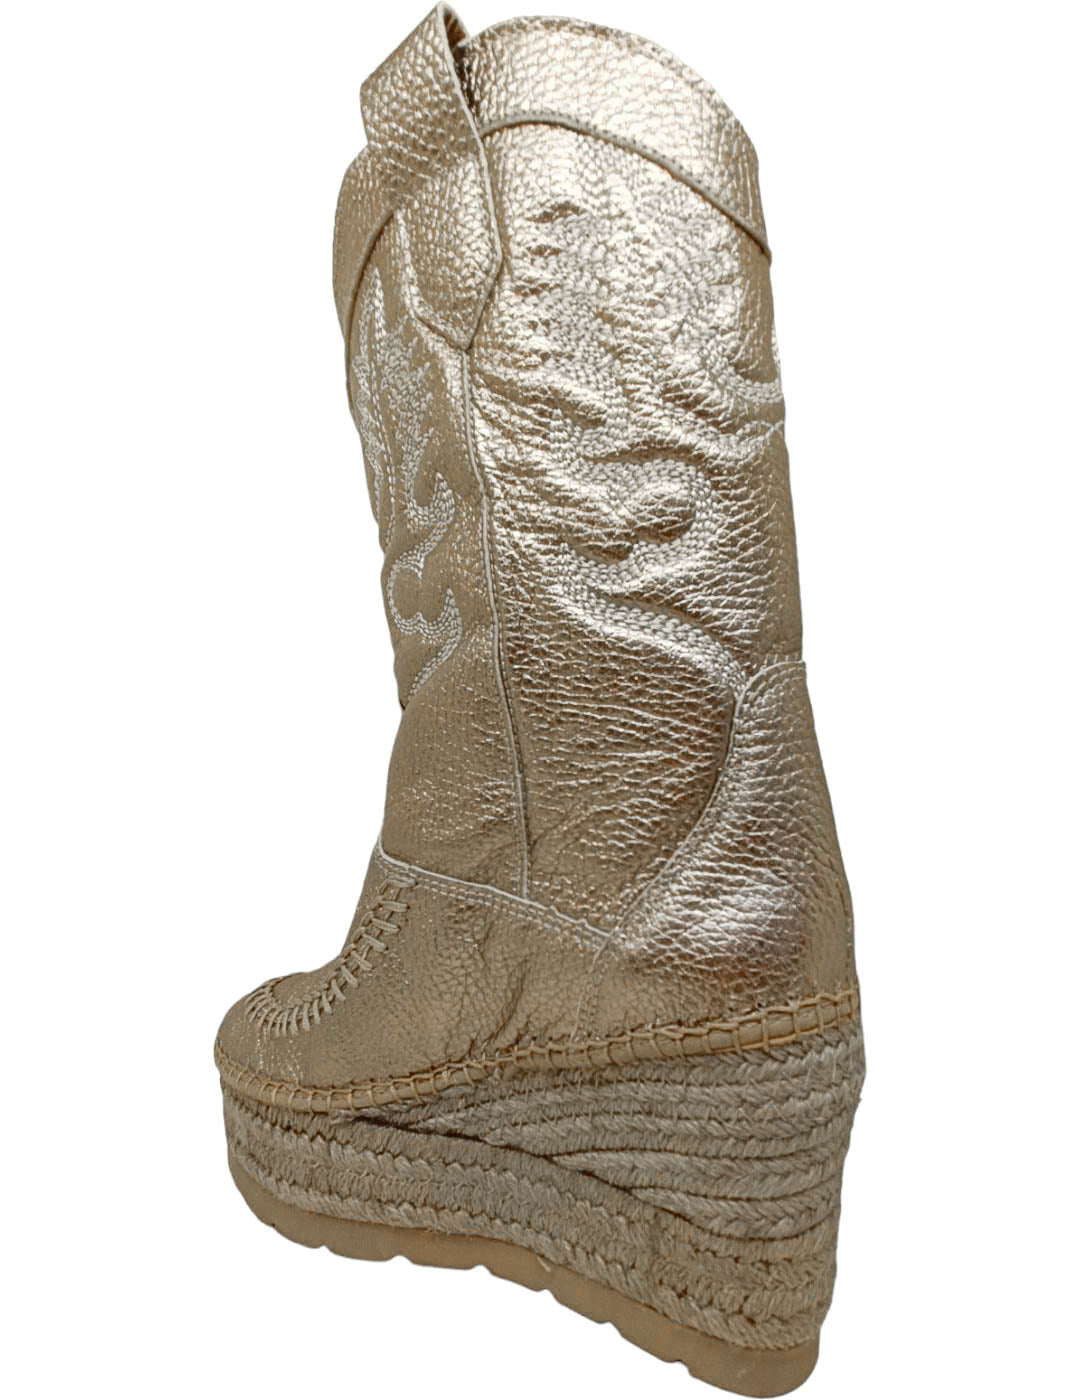 Bota estilo cowboy piel 98702 vidorreta metal